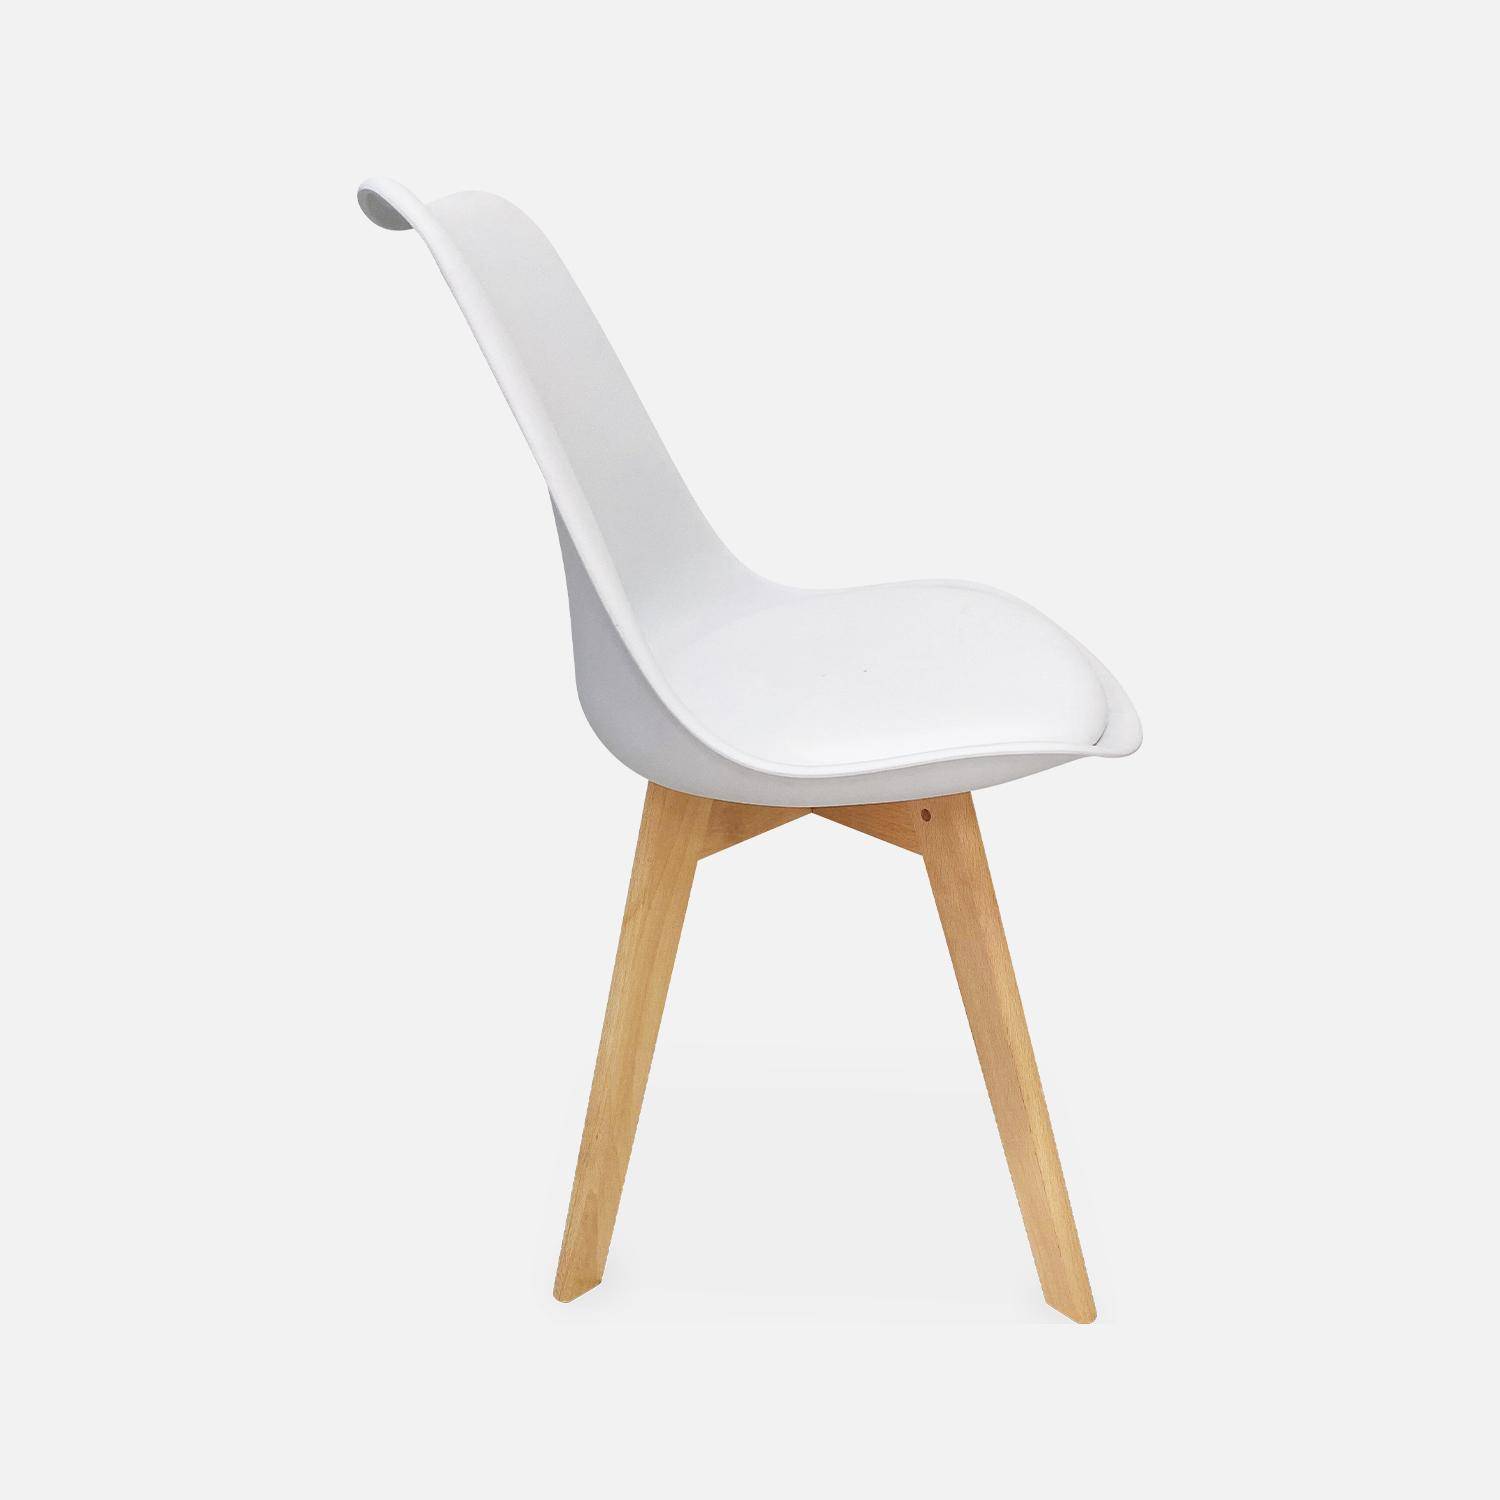 Juego de 6 sillas escandinavas, patas de madera de haya, monoplaza, blanco Photo6